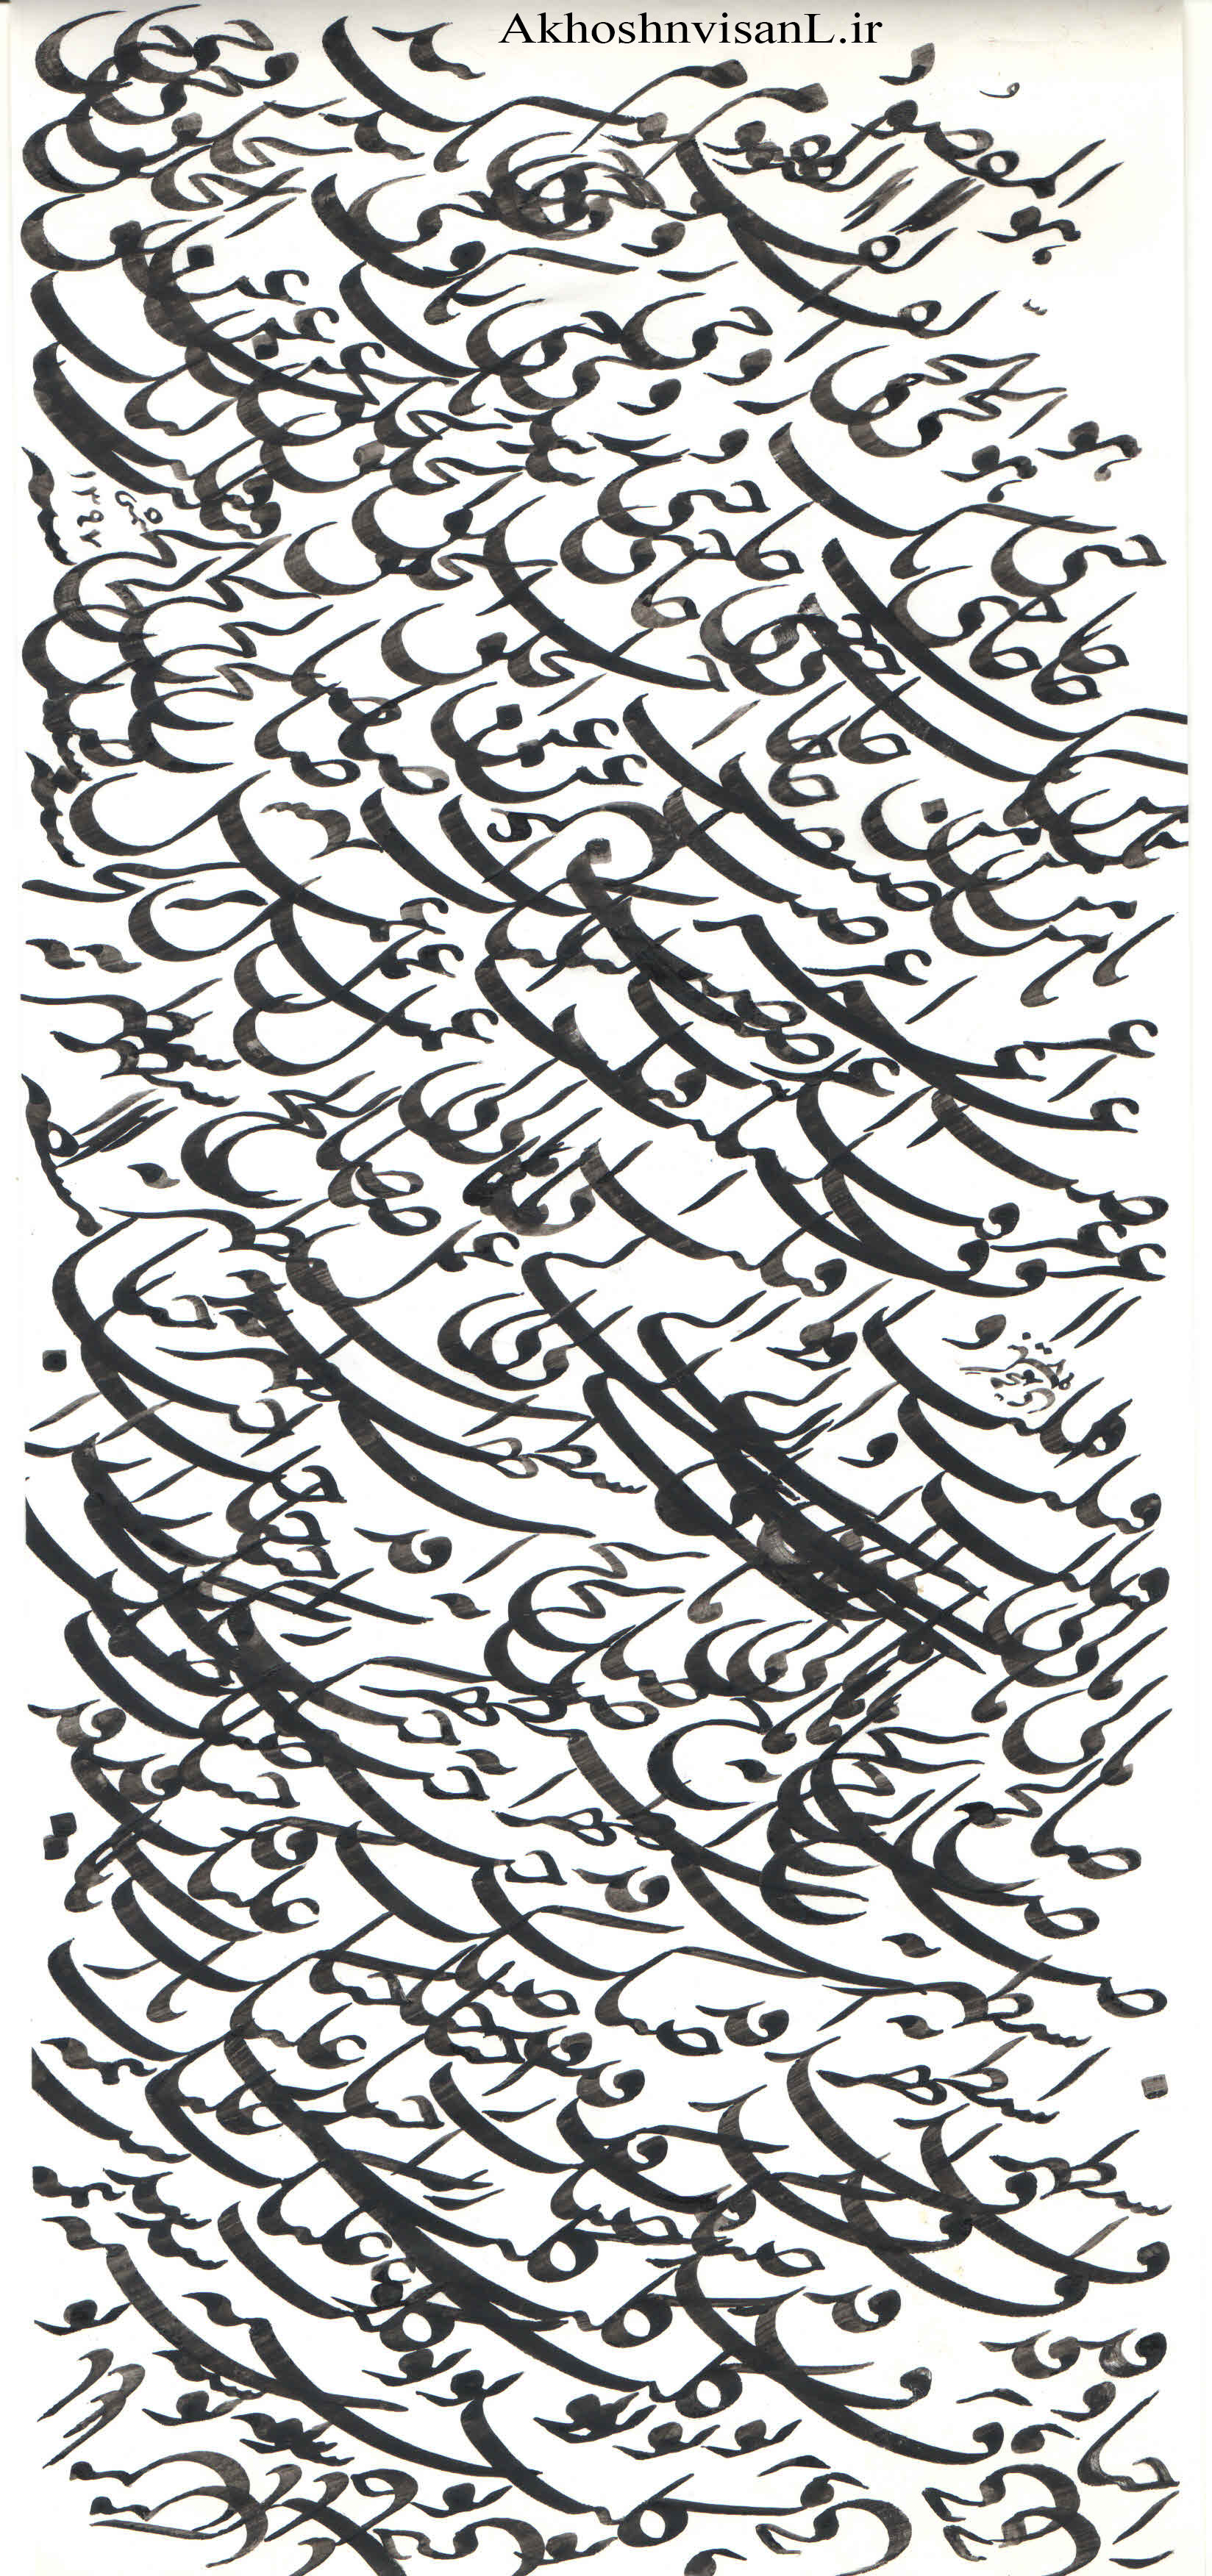 اثر زیبا از استاد بیگ محمدی